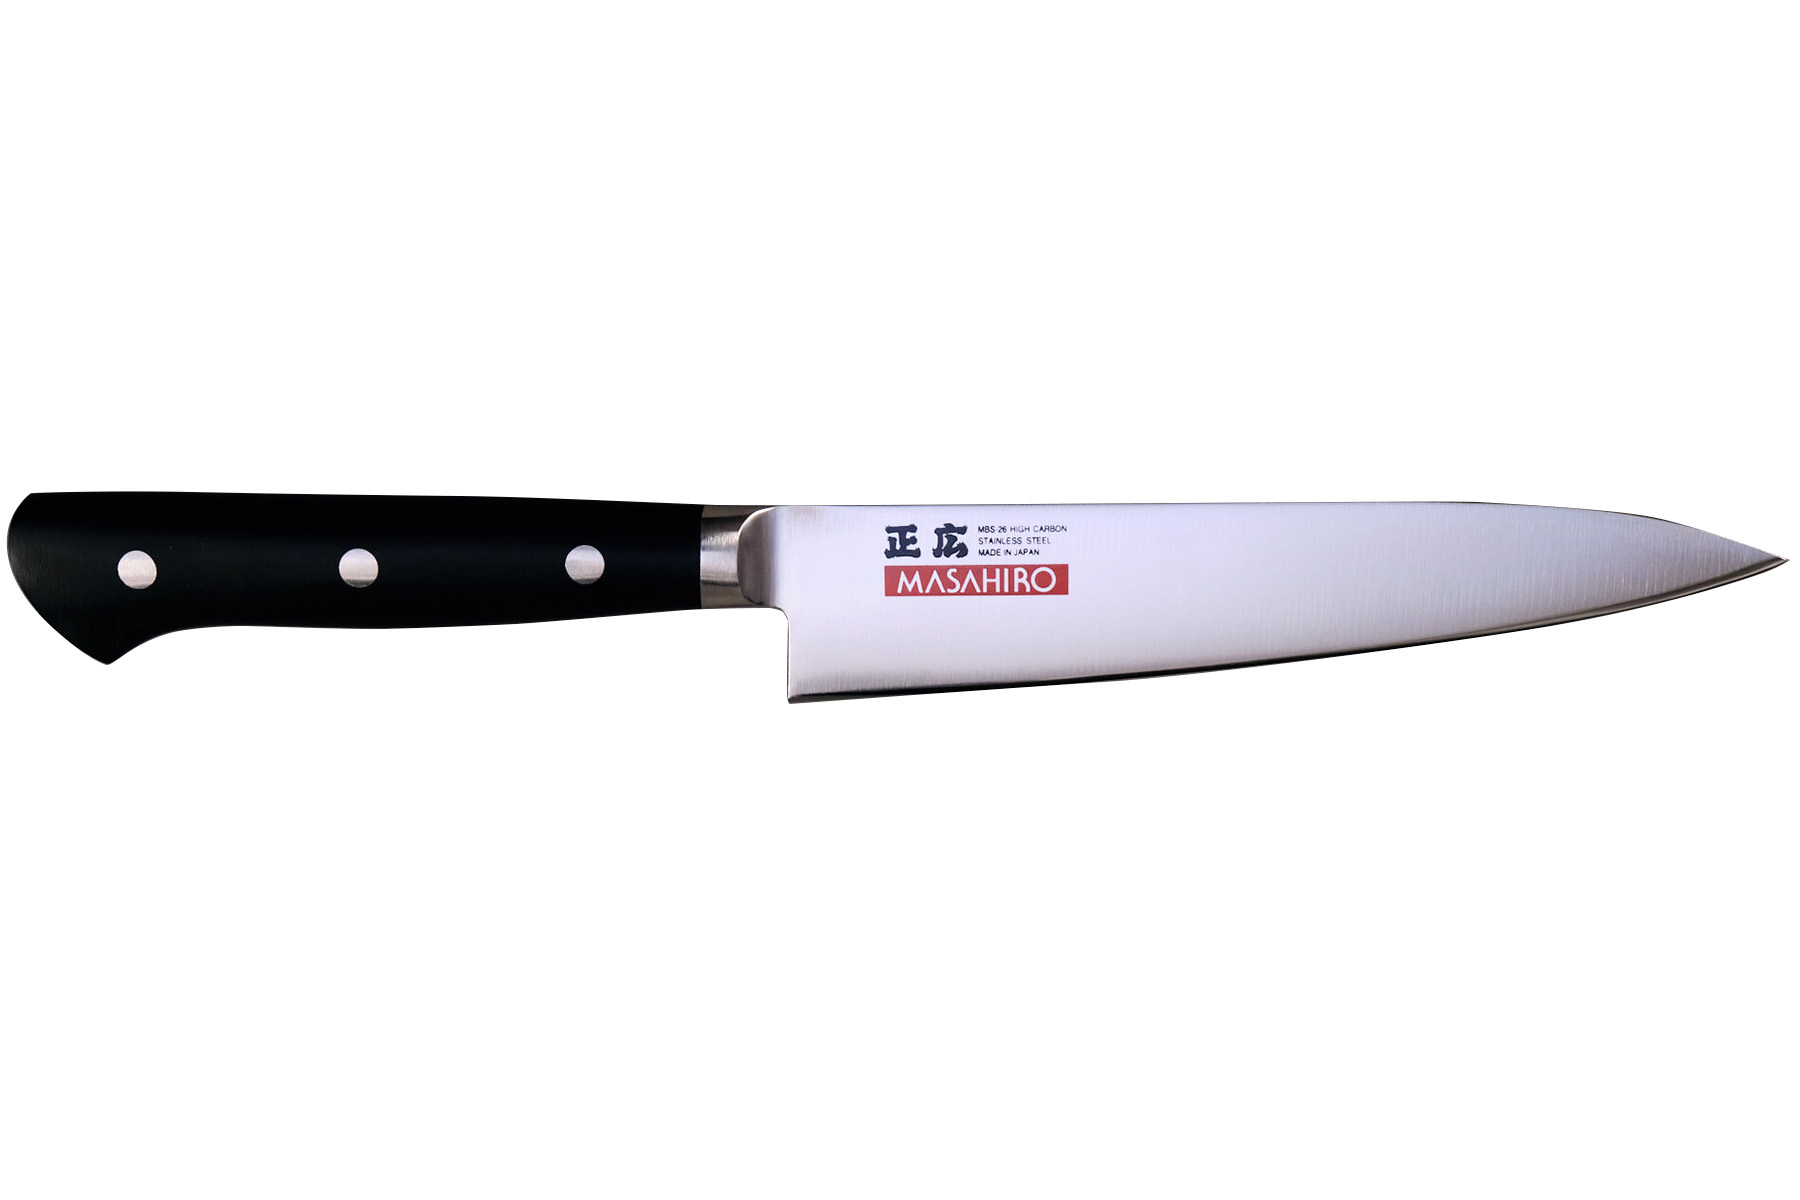 Couteau japonais Masahiro - Couteau utilitaire 15 cm